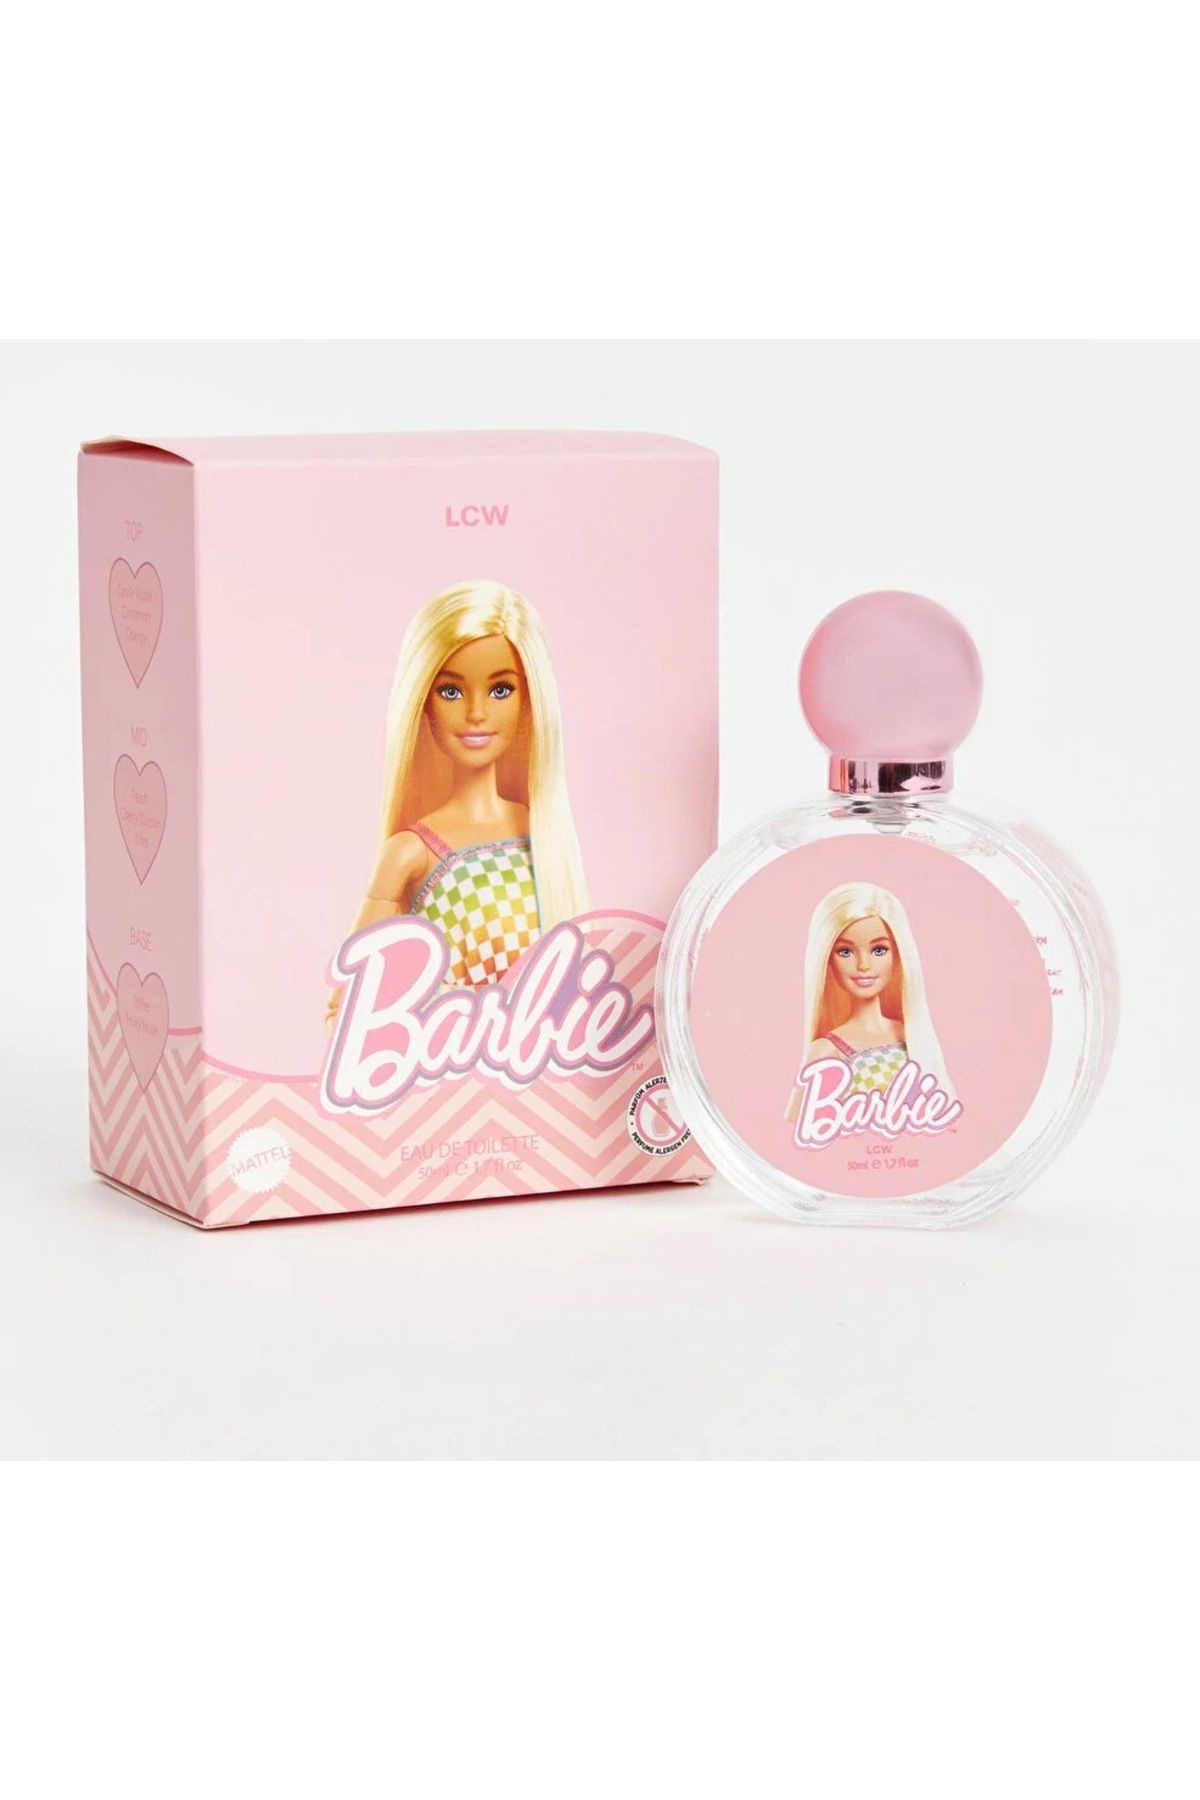 LC Waikiki Barbie parfüm EDT 50 ml : 43056982898377